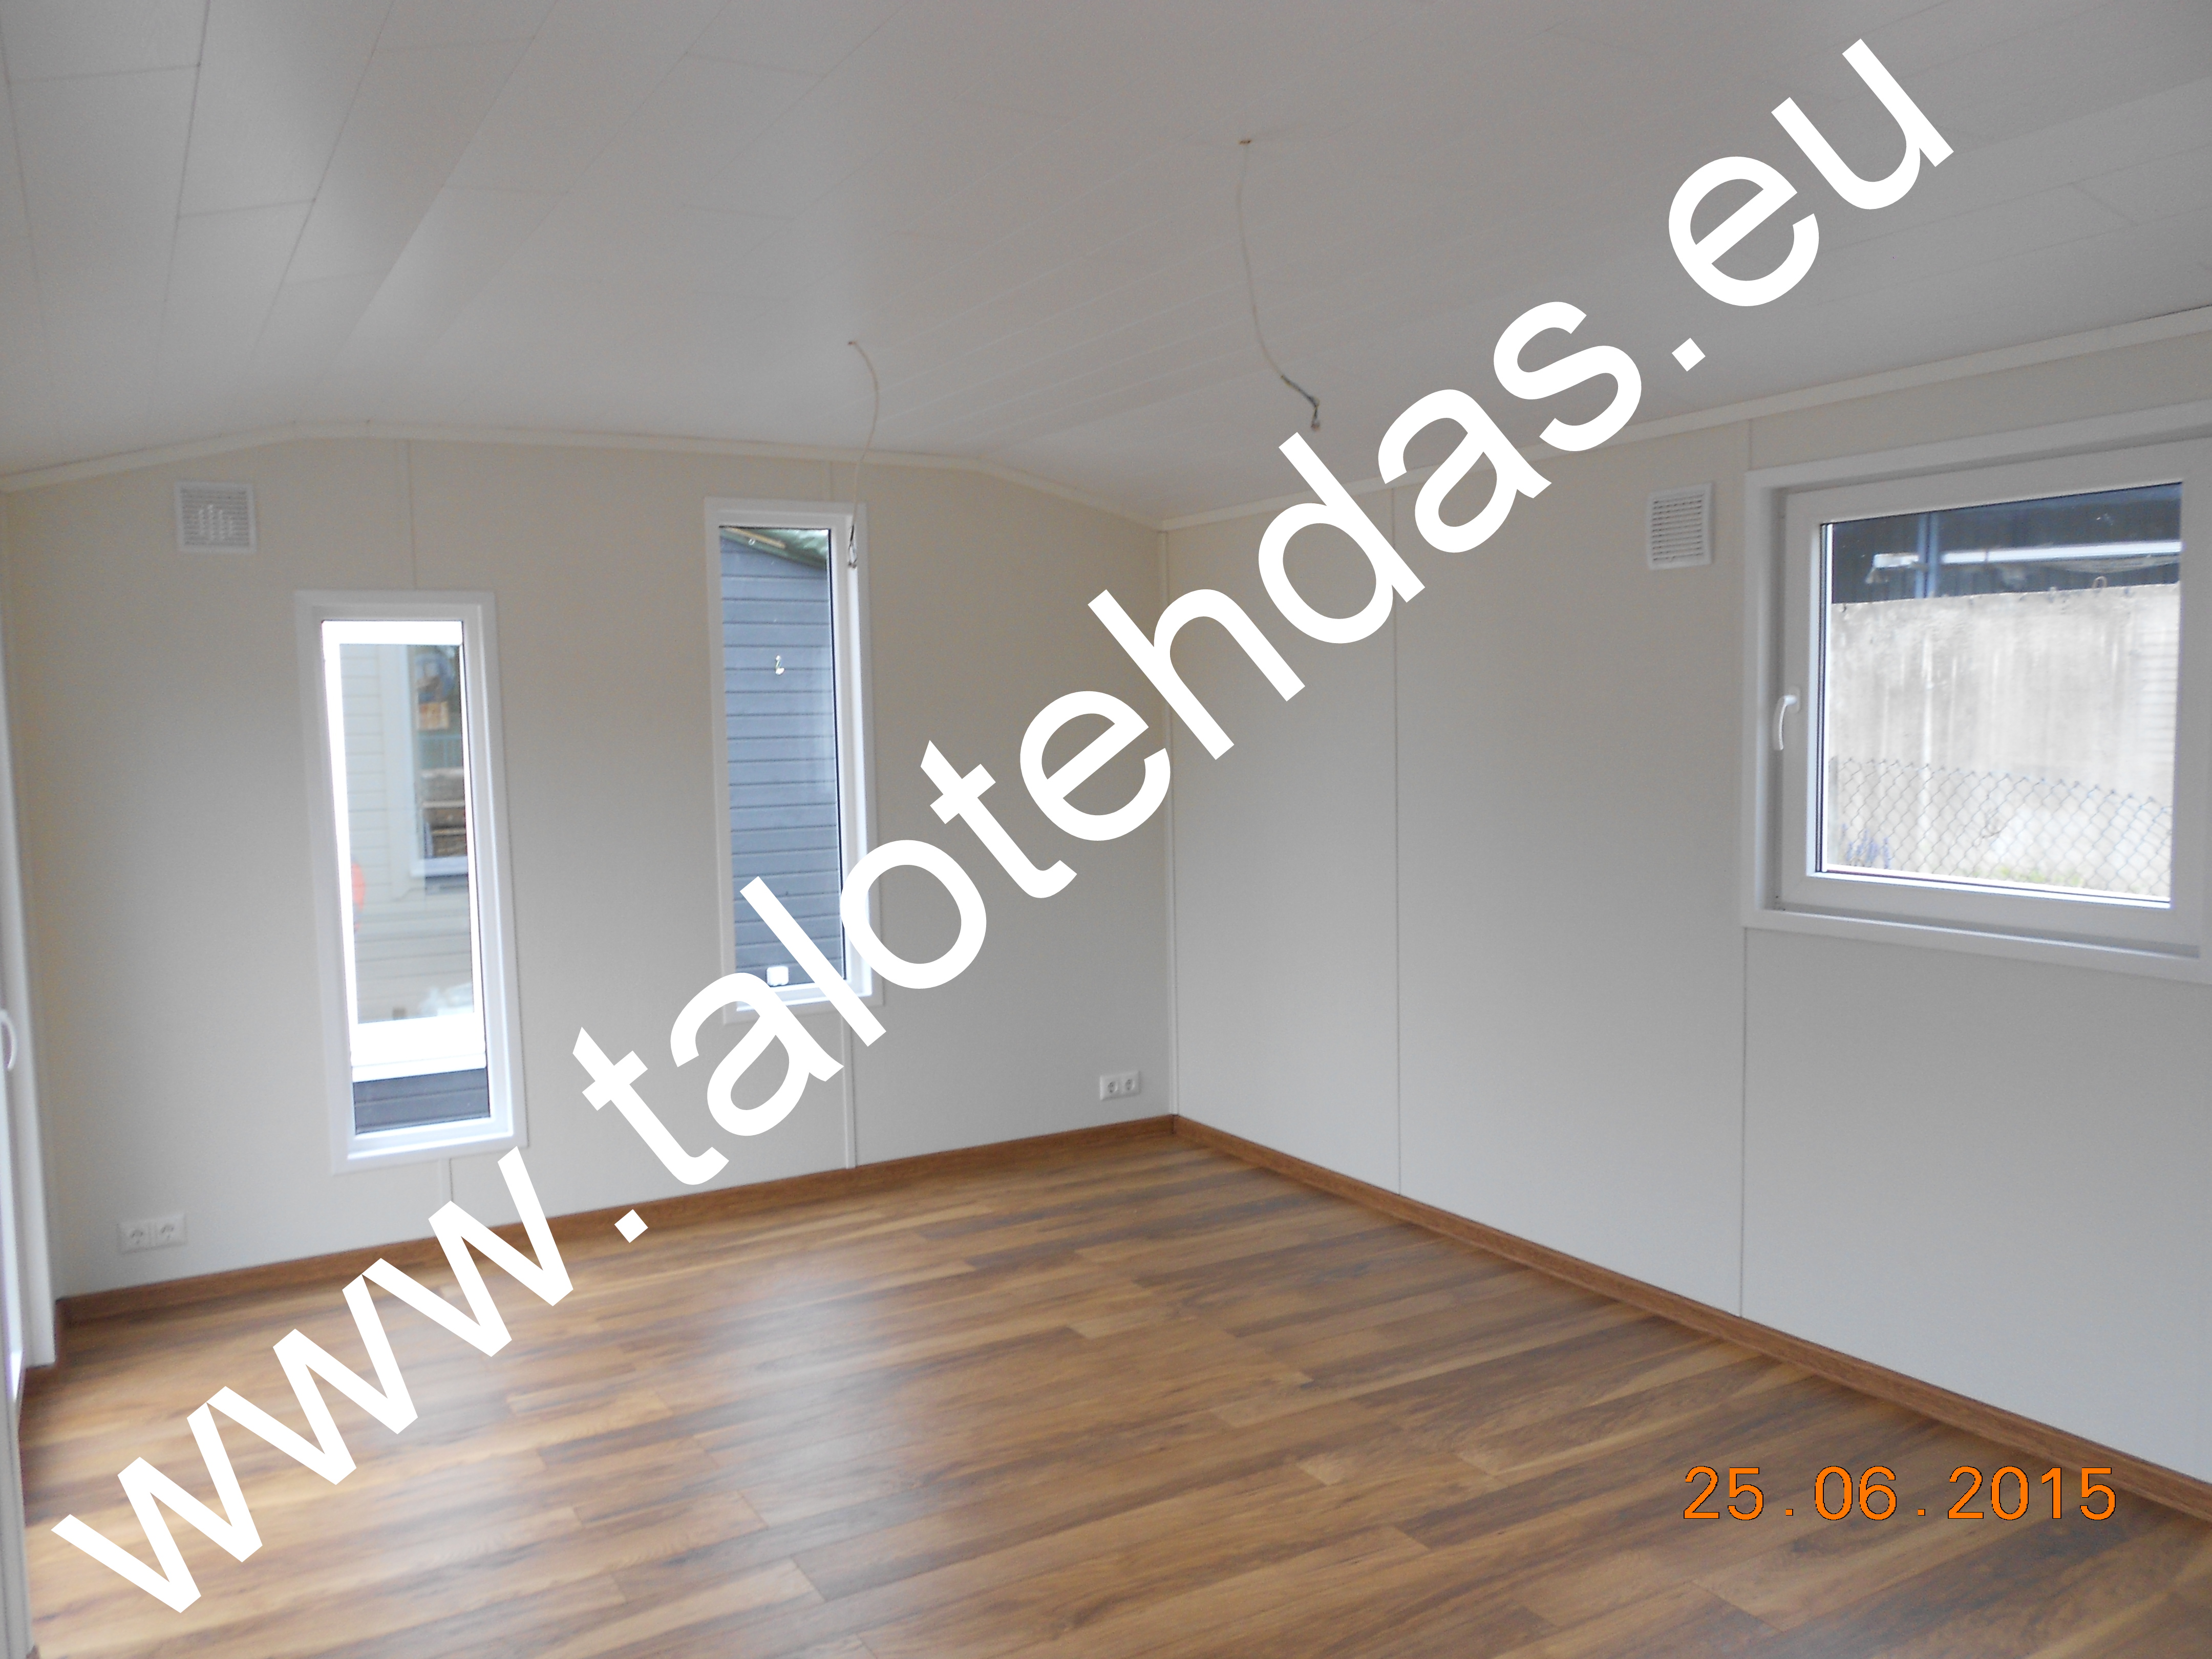 Mobile home, office 6,3 m x 4,0 m x 3,5 m Talovaunu, talovaunut, talovaunu Virosta, talotehdas, ratastelkodu, työmaakoppi, toimisto, pyörillä talo..